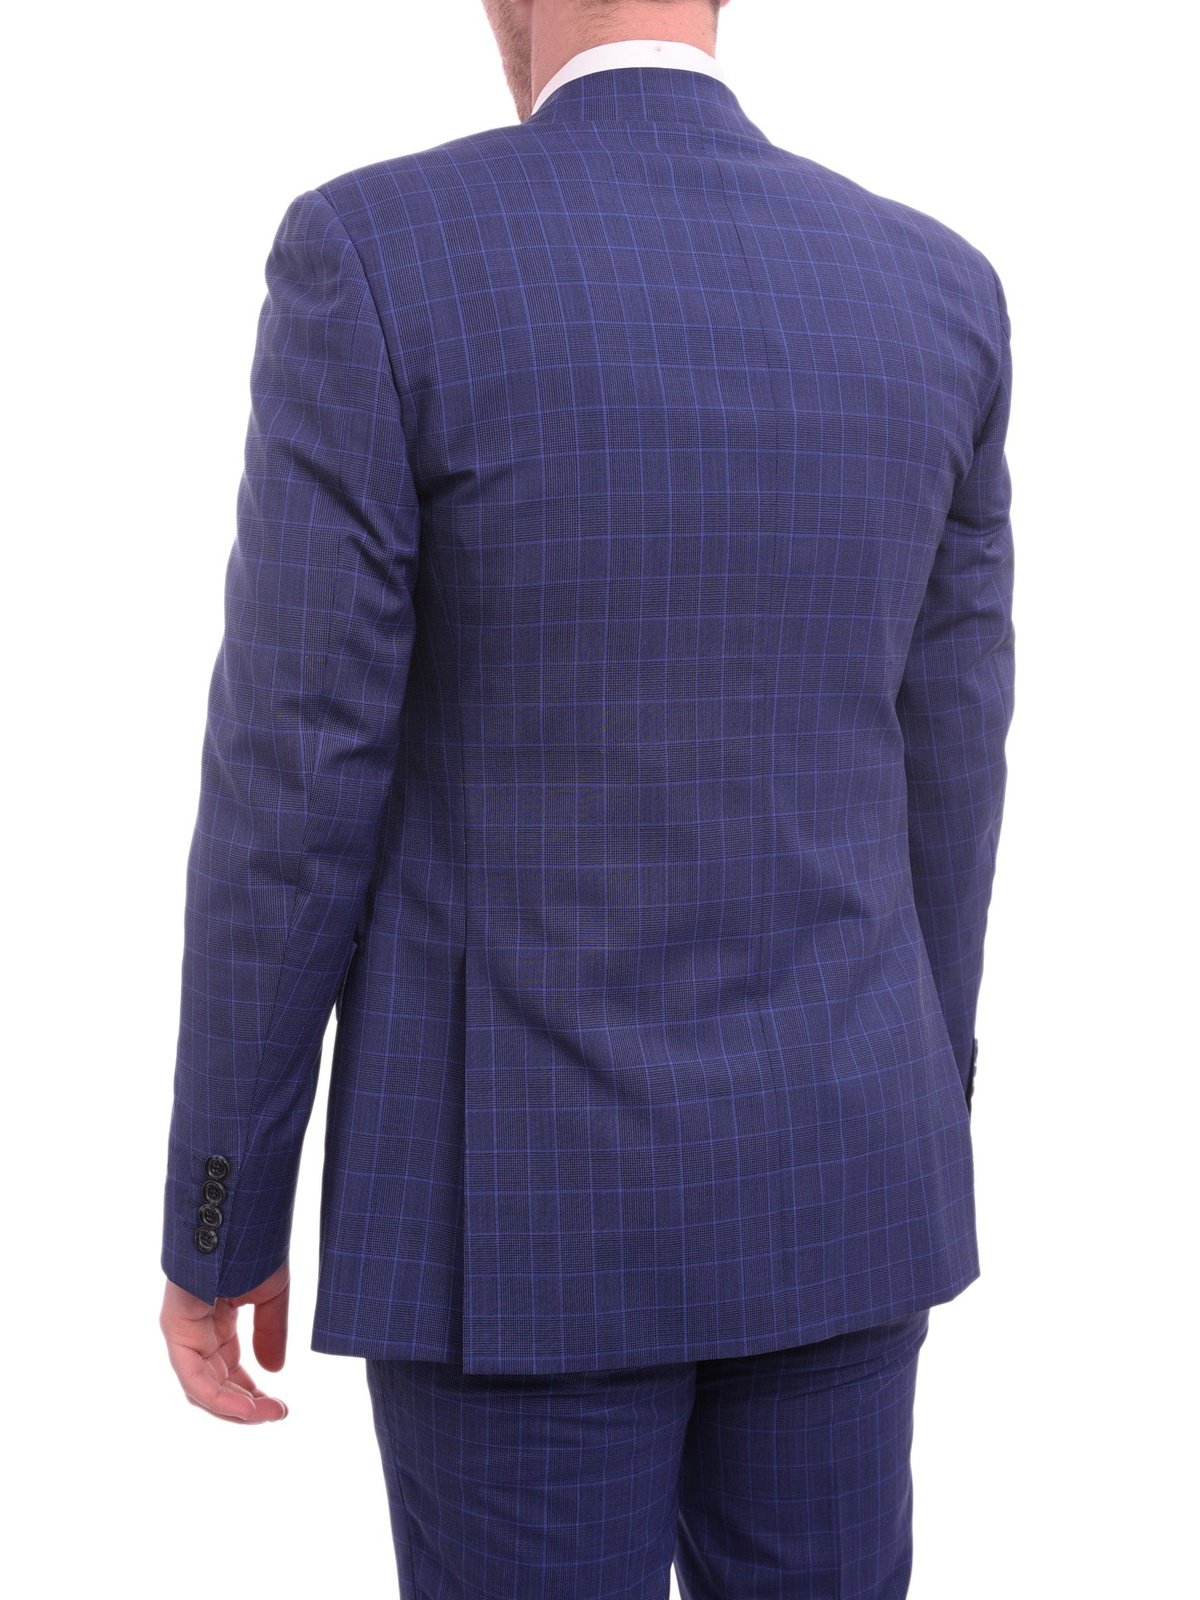 Napoli TWO PIECE SUITS Napoli Slim Fit Blue Glen Plaid Half Canvassed Wool Suit Wide Peak Lapels